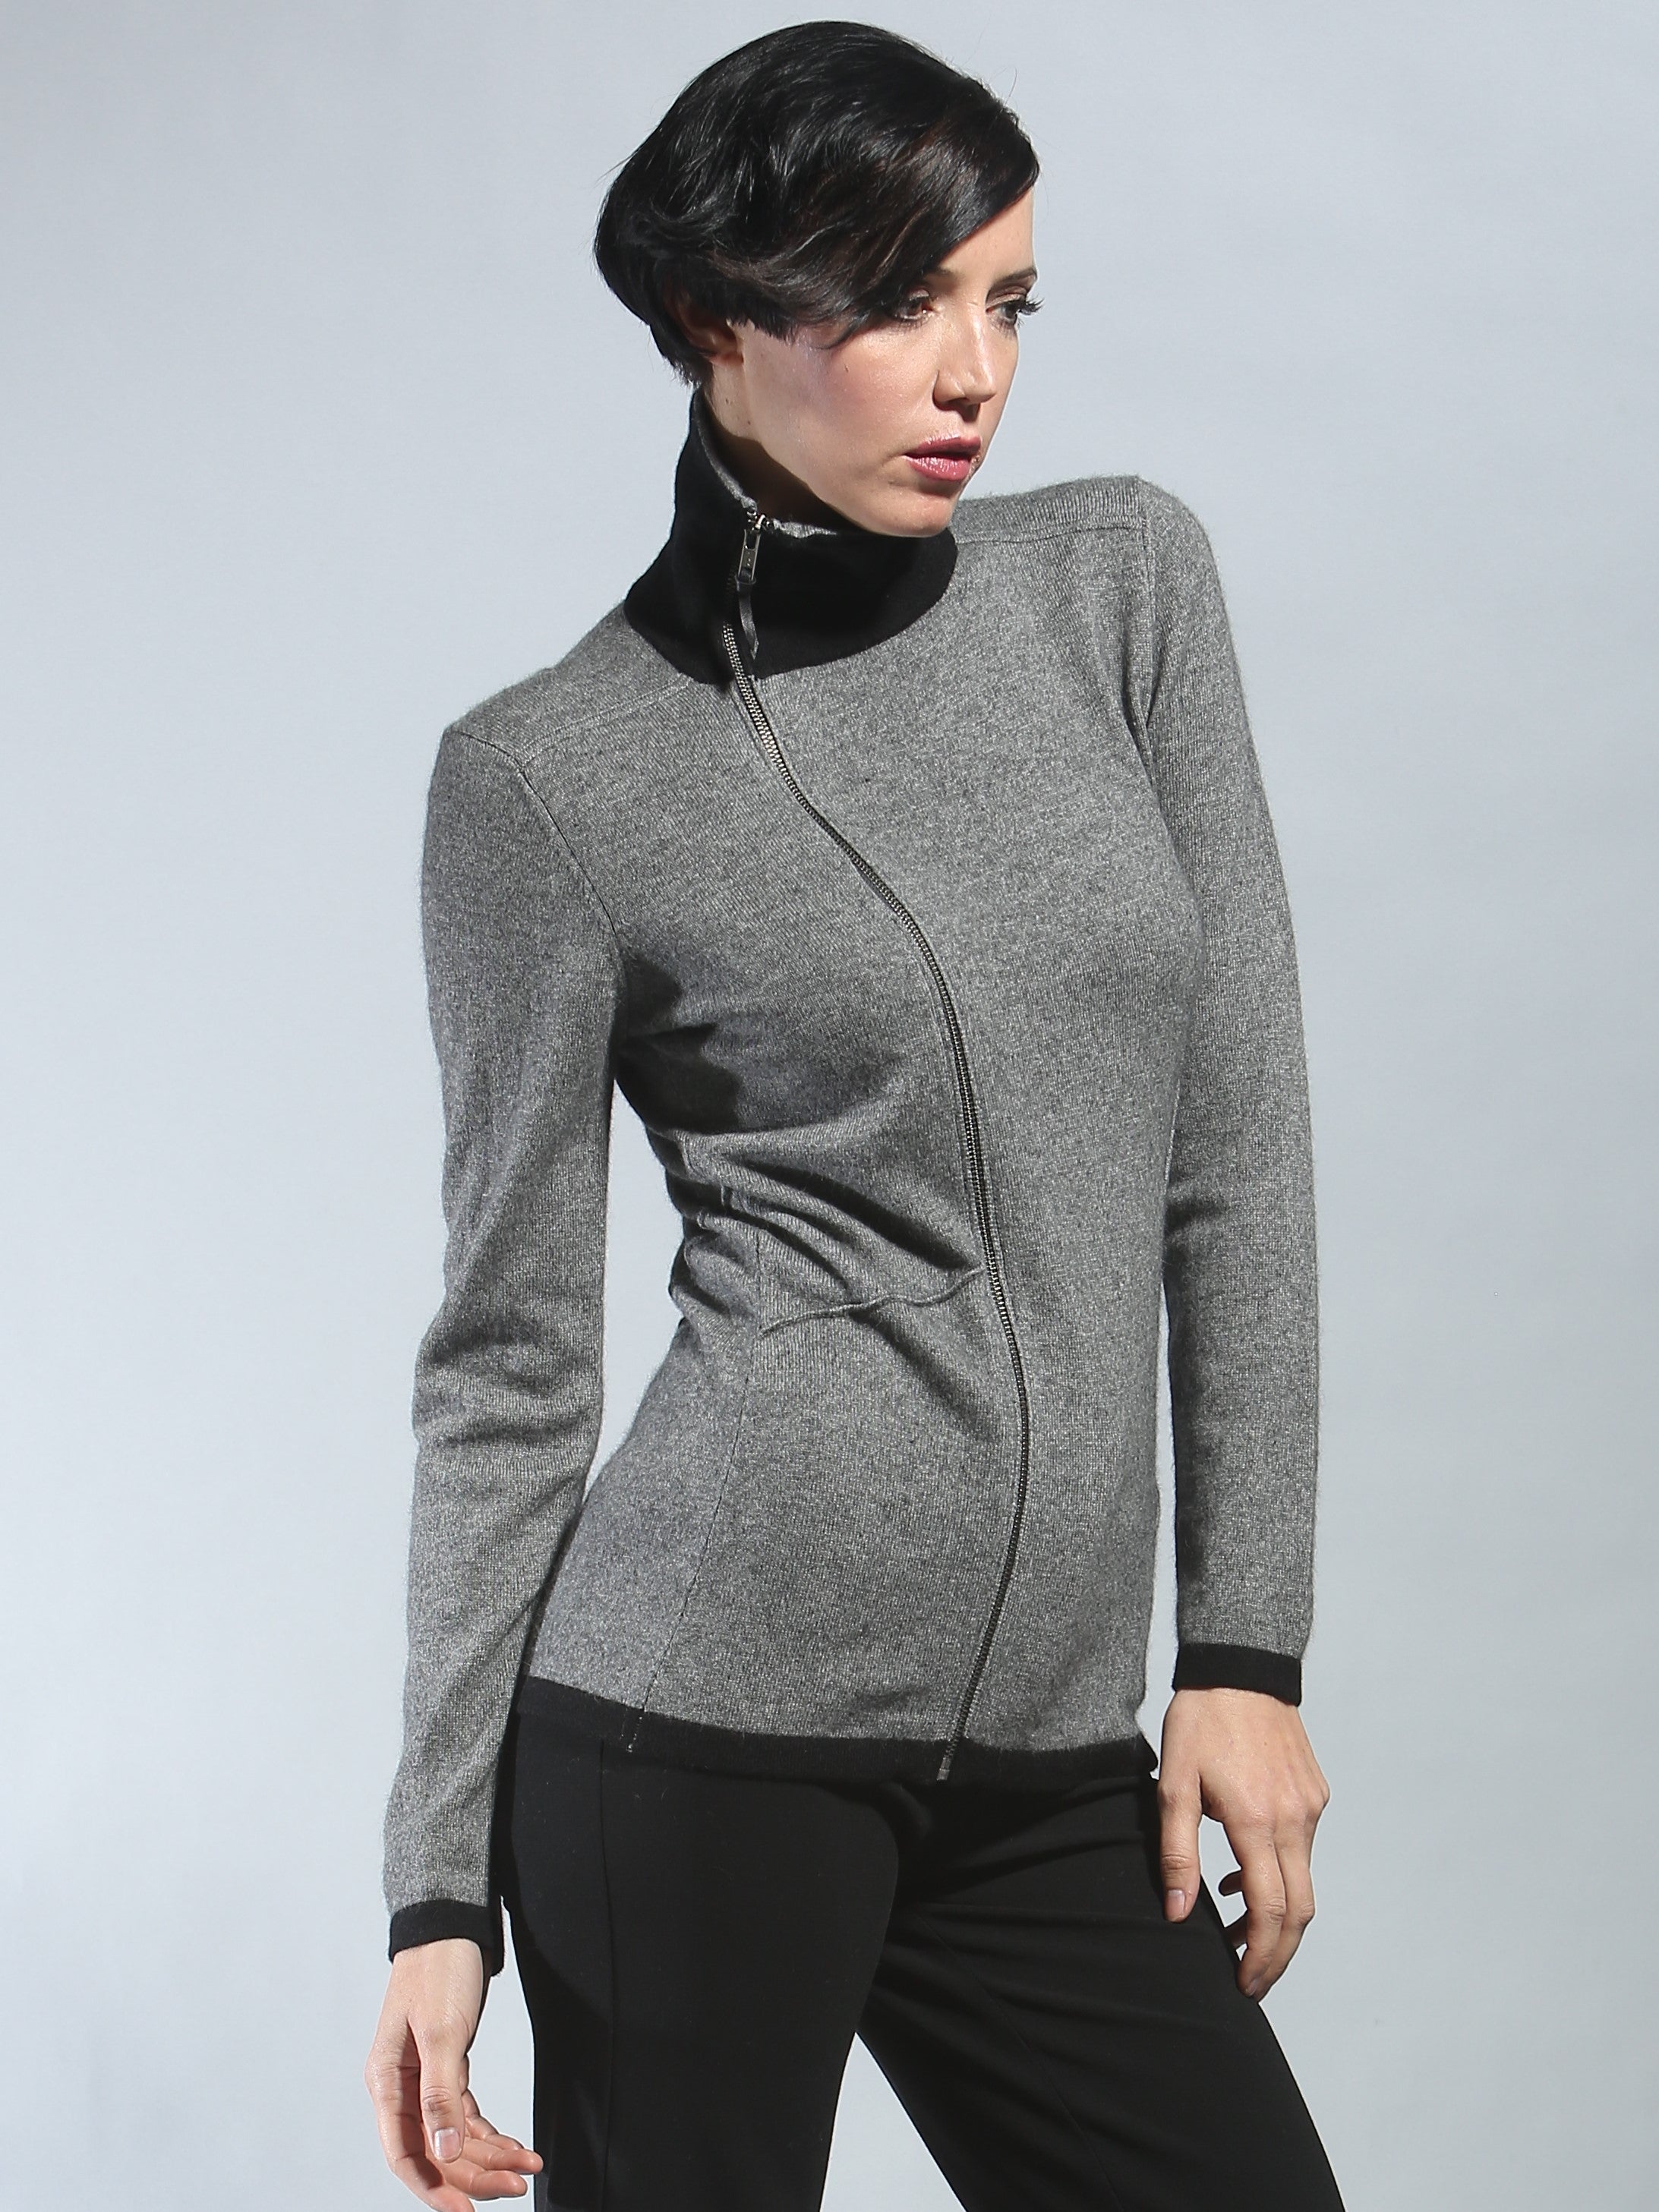 Fisoew Womens Turtleneck Sweatshirt Long Sleeve Side Split